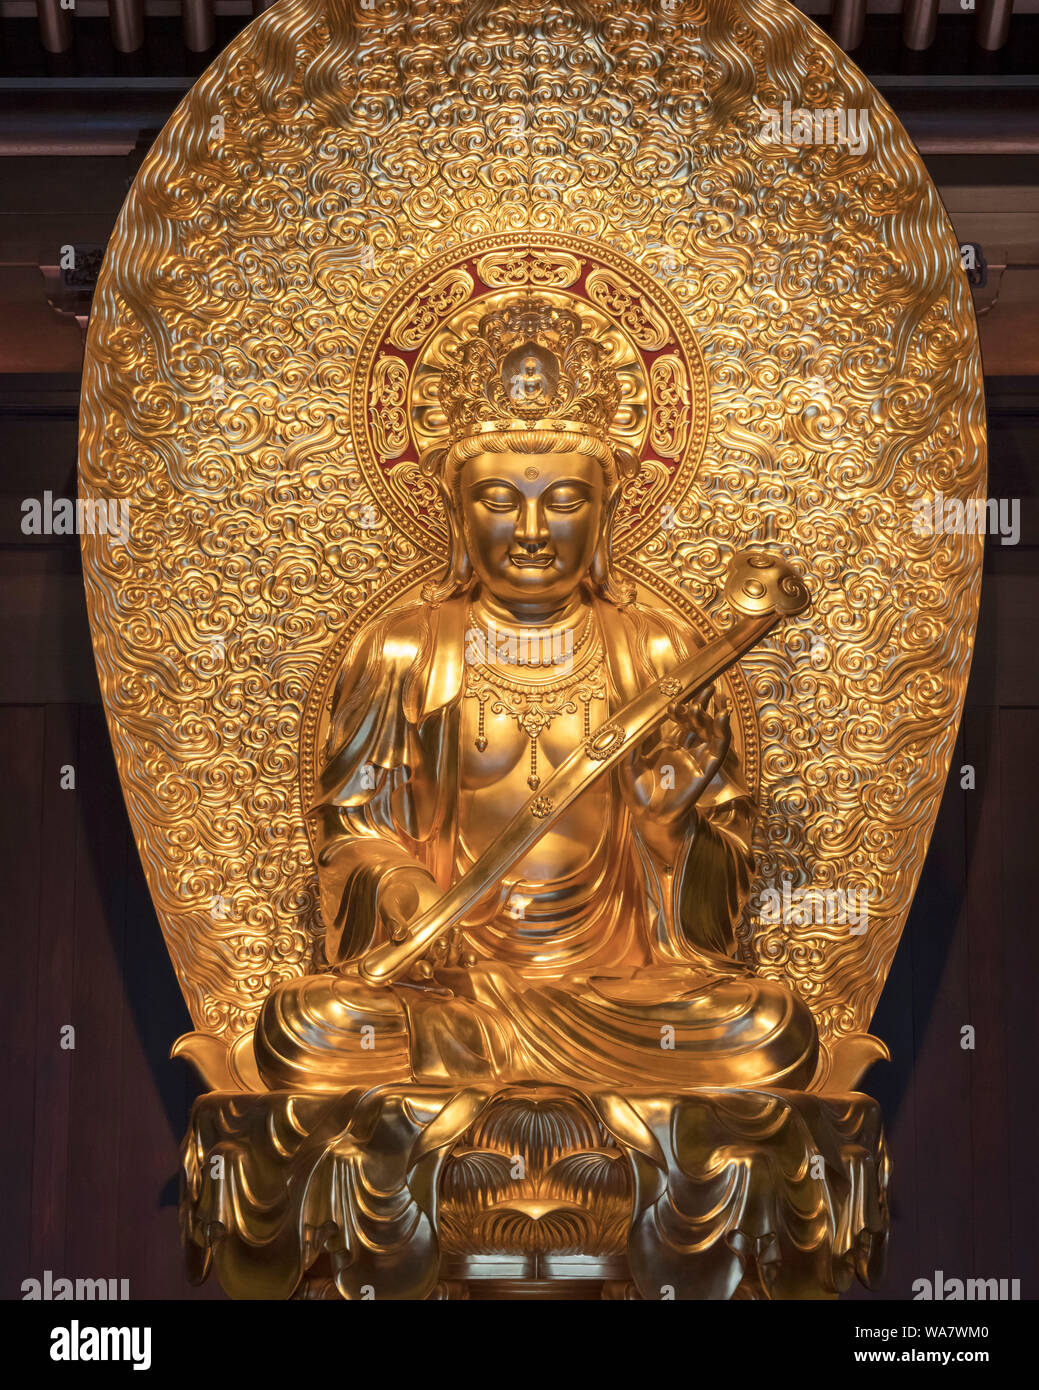 Statua di un Buddha d'oro nel Tempio del Buddha di Giada, Shanghai, Cina Foto Stock